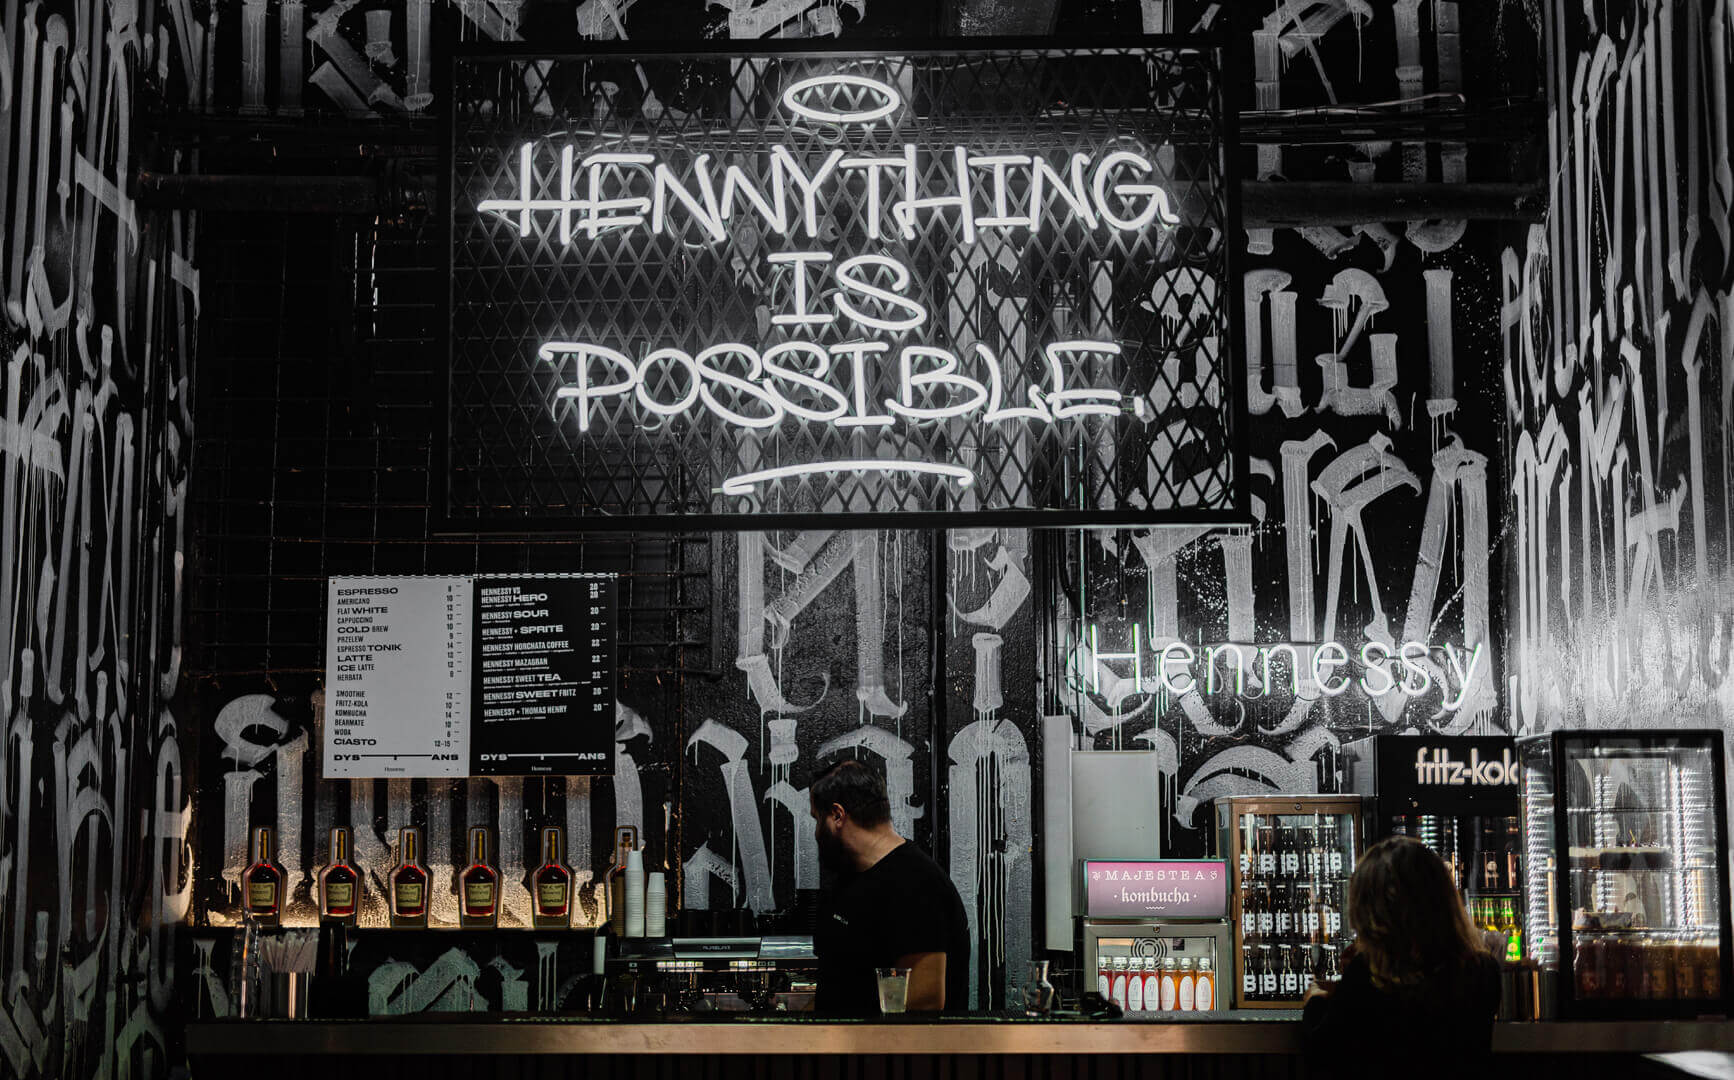 Bei Henny ist alles möglich - Neonschild auf einem Gitter über einer Bar in Gdańsk.